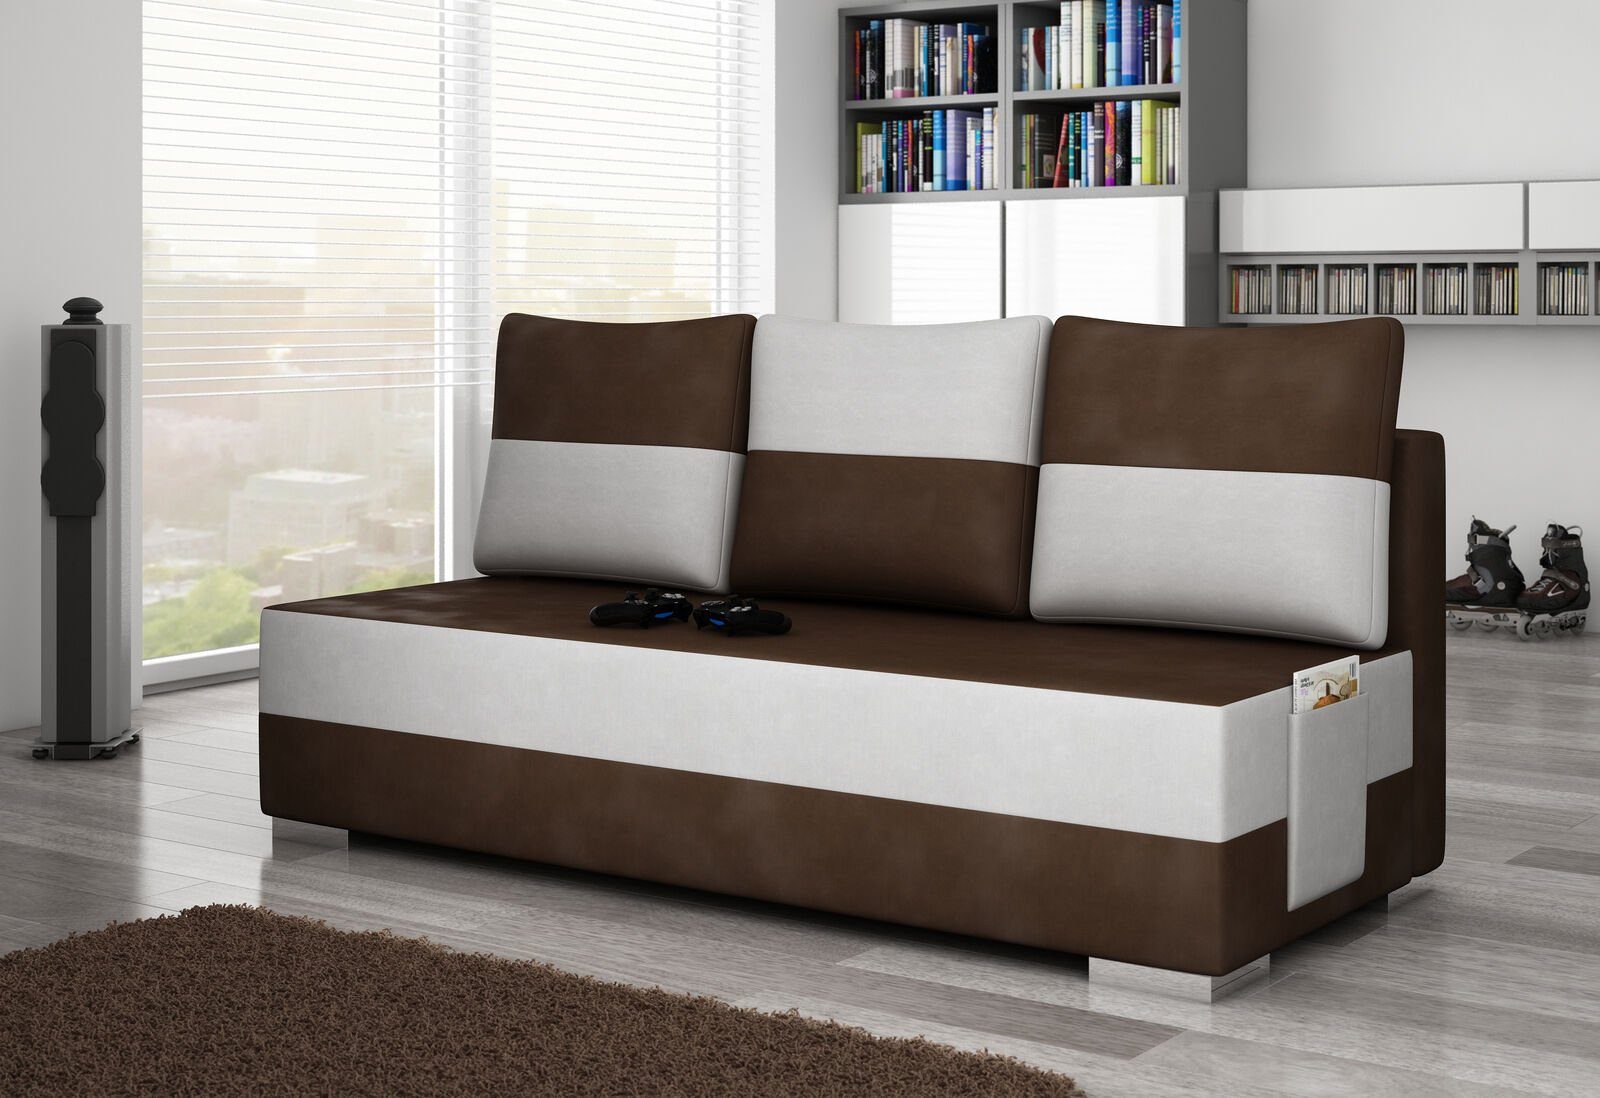 JVmoebel Sofa Braun-weißer Dreisitzer luxus Sofa 3-er Textilmöbel Couch Neu, Made in Europe Dunkelbraun / Weiß